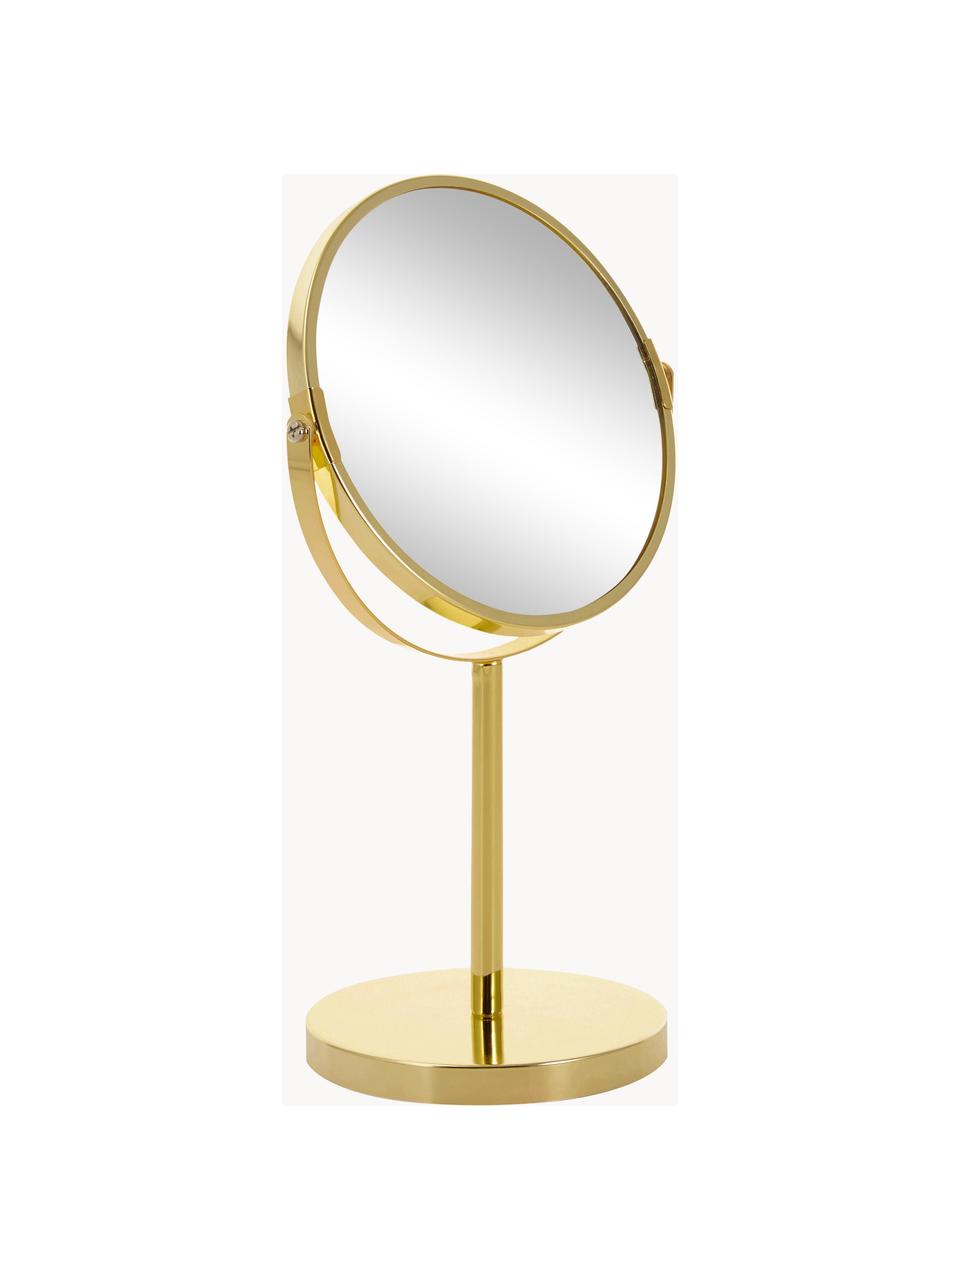 Runder Kosmetikspiegel Classic mit Vergrößerung und Metallsockel, Rahmen: Metall, beschichtet, Spiegelfläche: Spiegelglas, Goldfarben, Ø 20 x H 35 cm